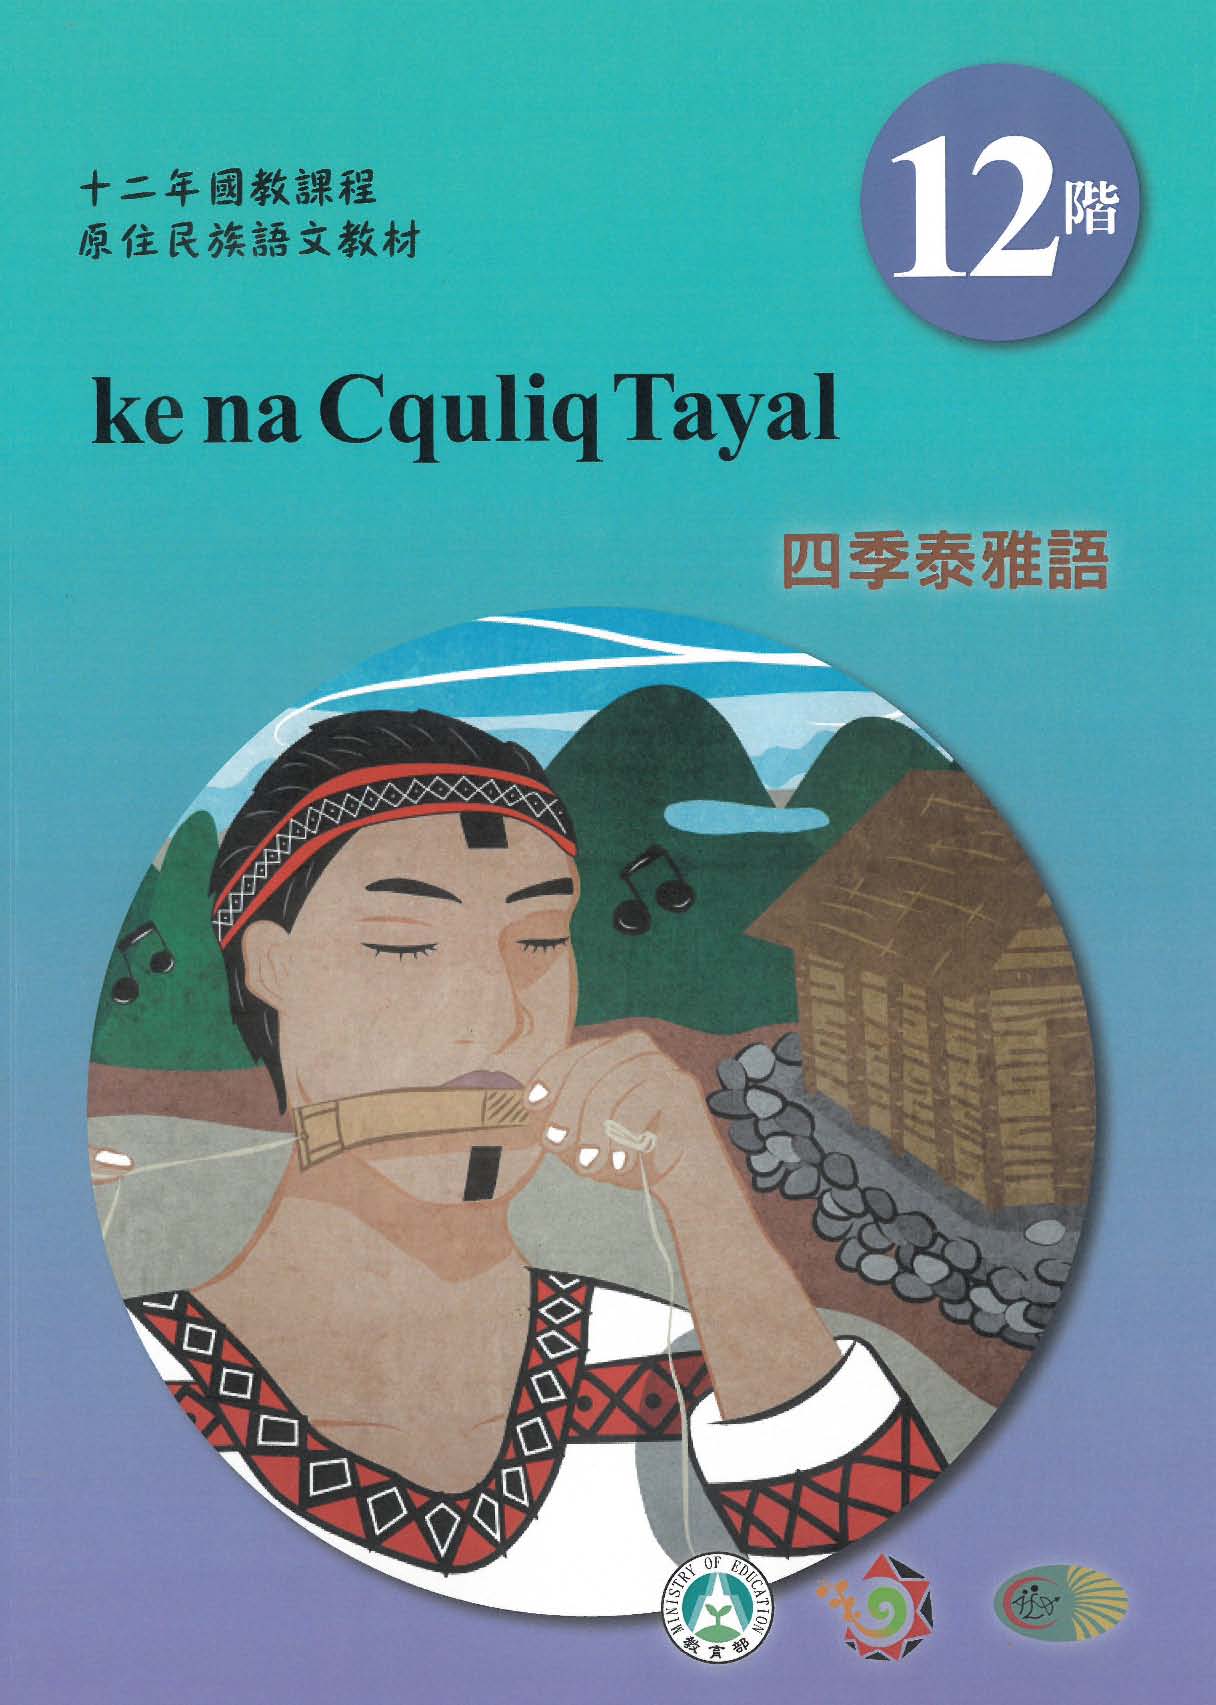 十二年國教原住民族語文教材 四季泰雅語 學習手冊 第12階